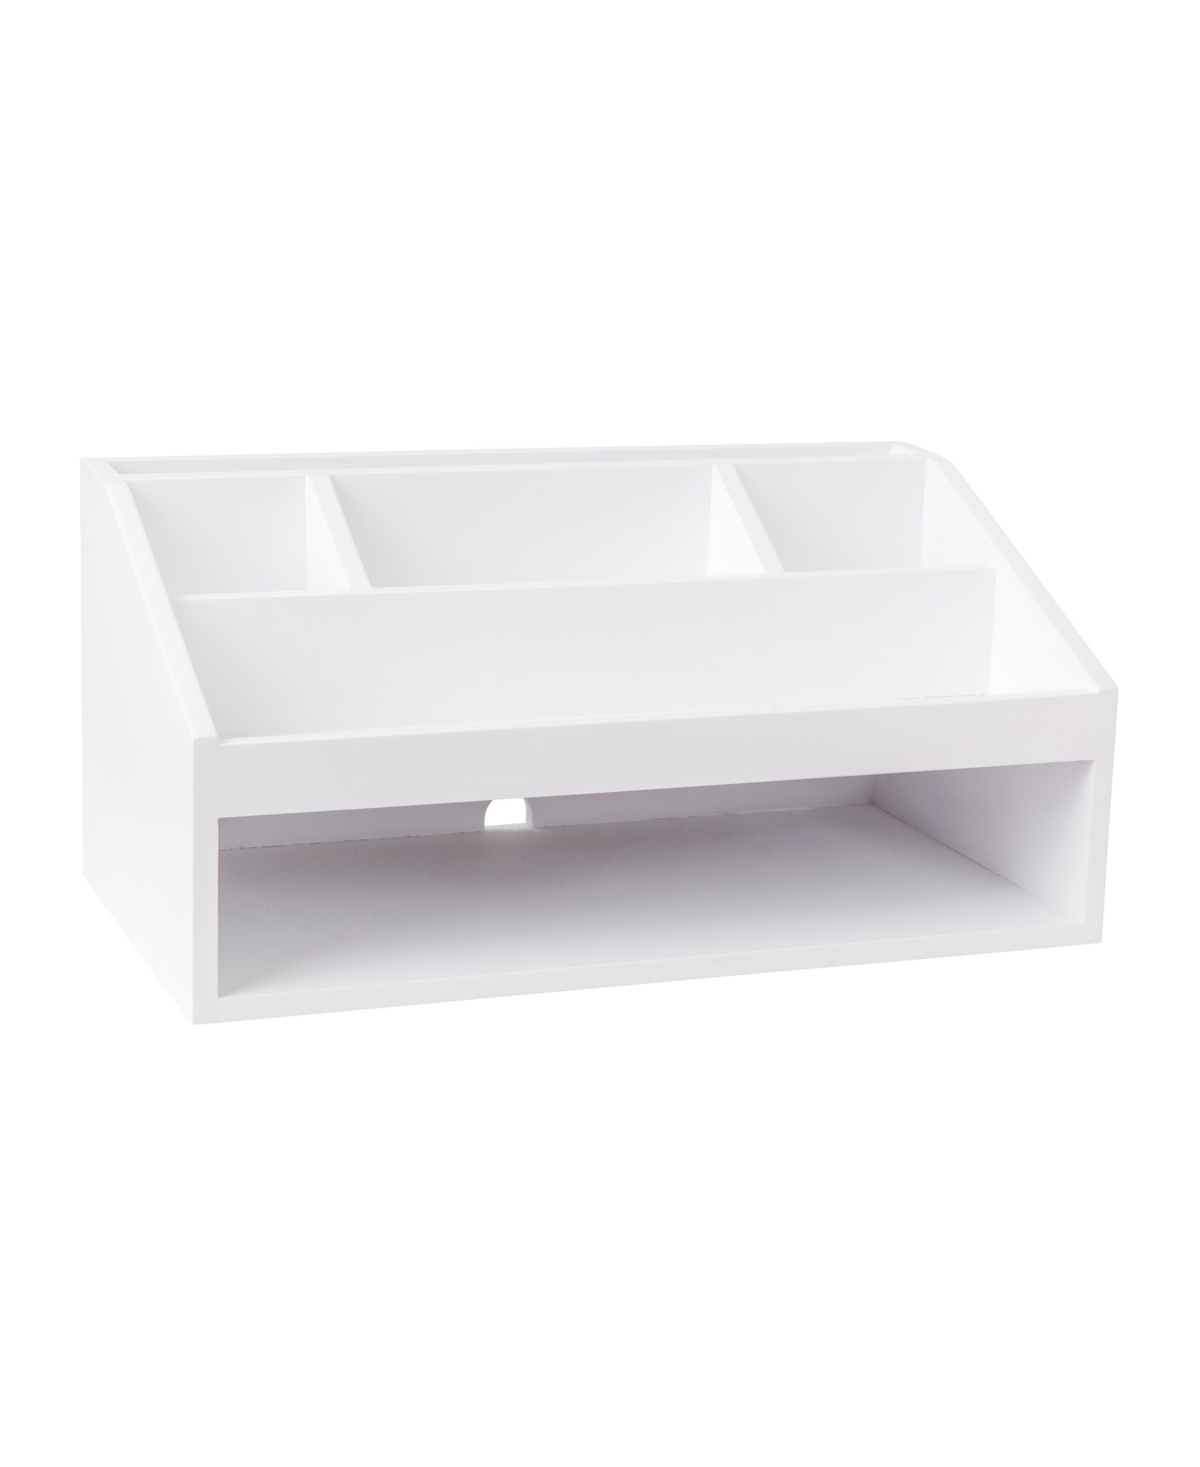 Weston Wooden Desktop Organizer with Open Lower Storage Compartment, Engineered Wood Multipurpose Storage Caddy - White